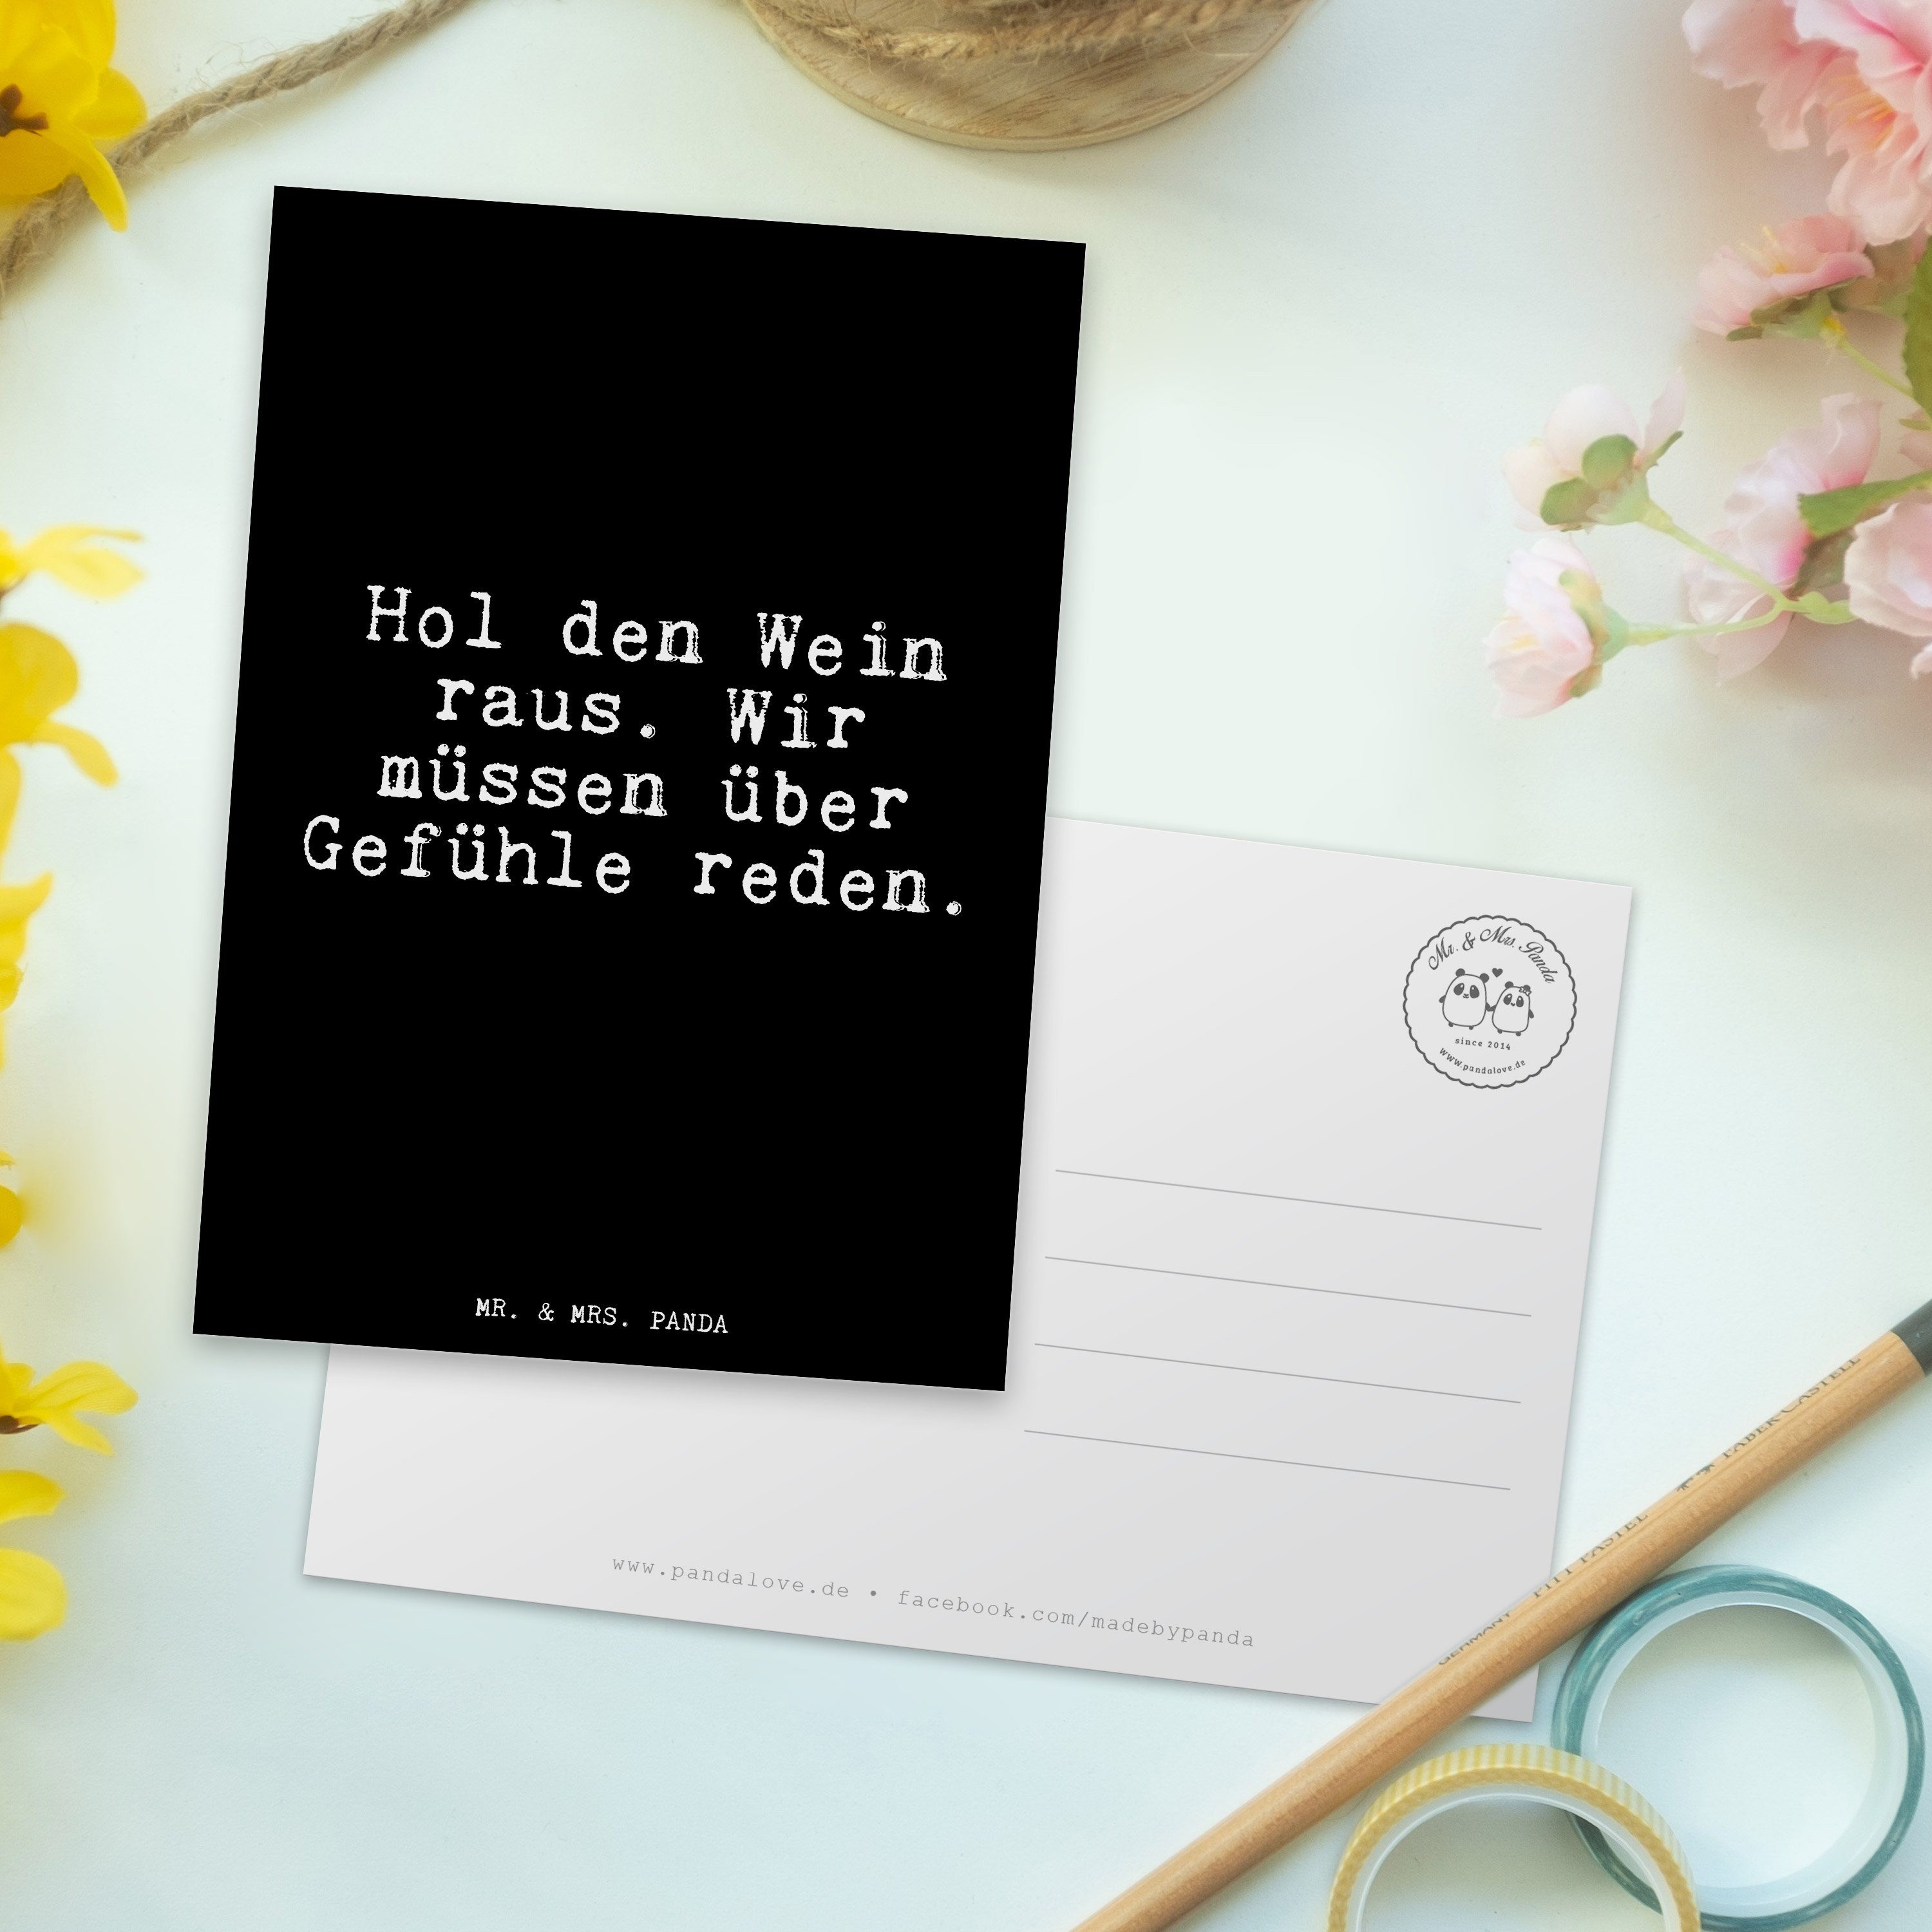 Mr. Hol Geschenk, - den kleine - Wein Mrs. Schwarz & raus.... Panda Aufmerksamkeit, Postkarte Ge